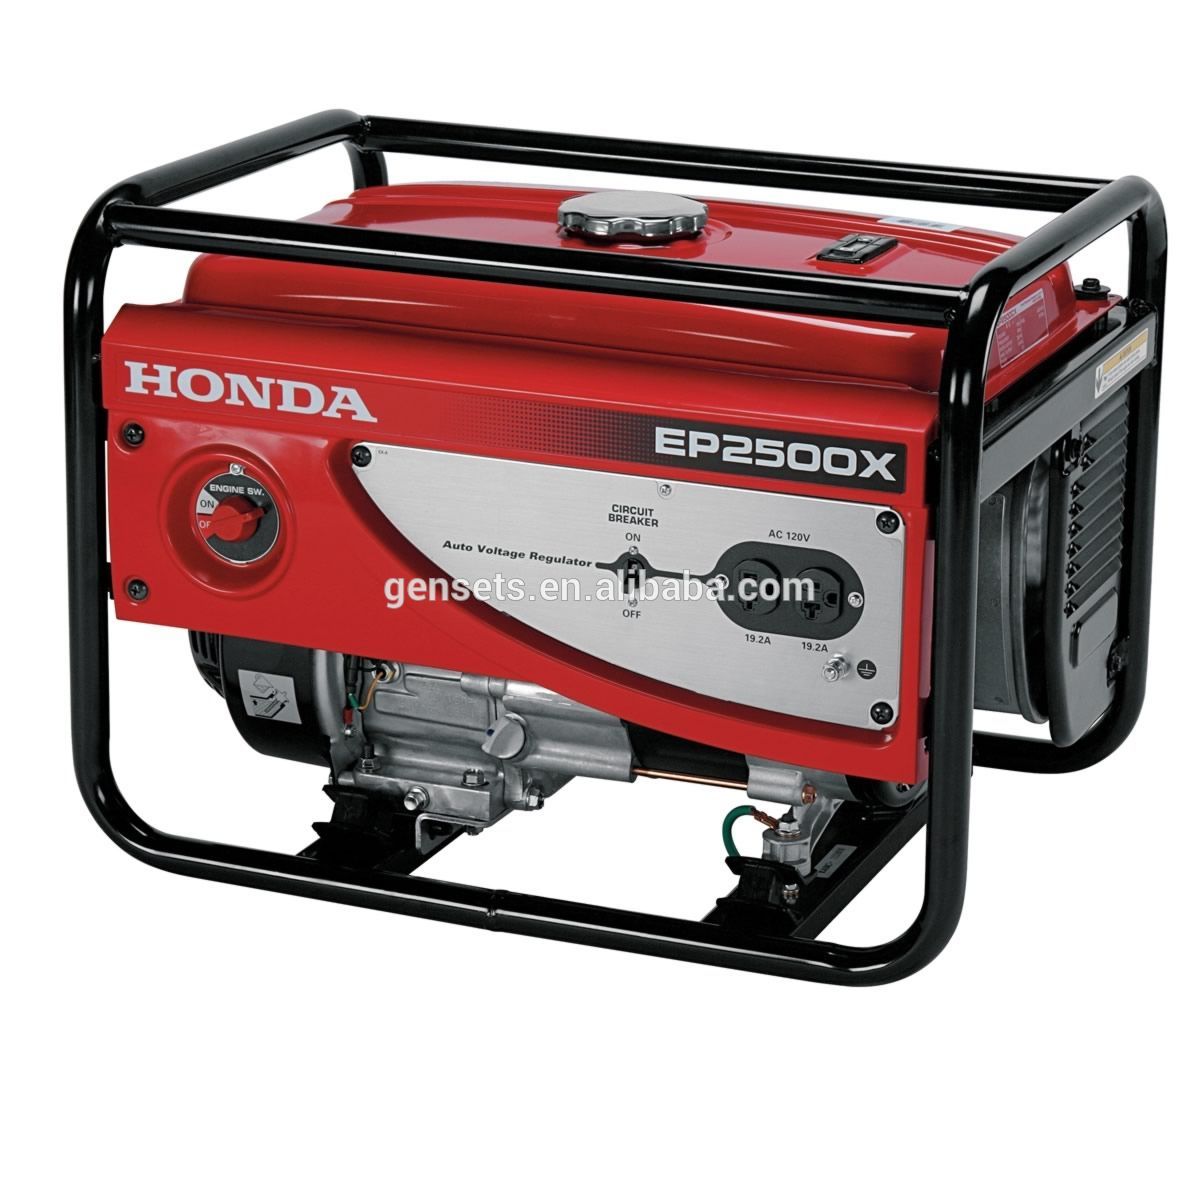 Honda 4500 generator pricing